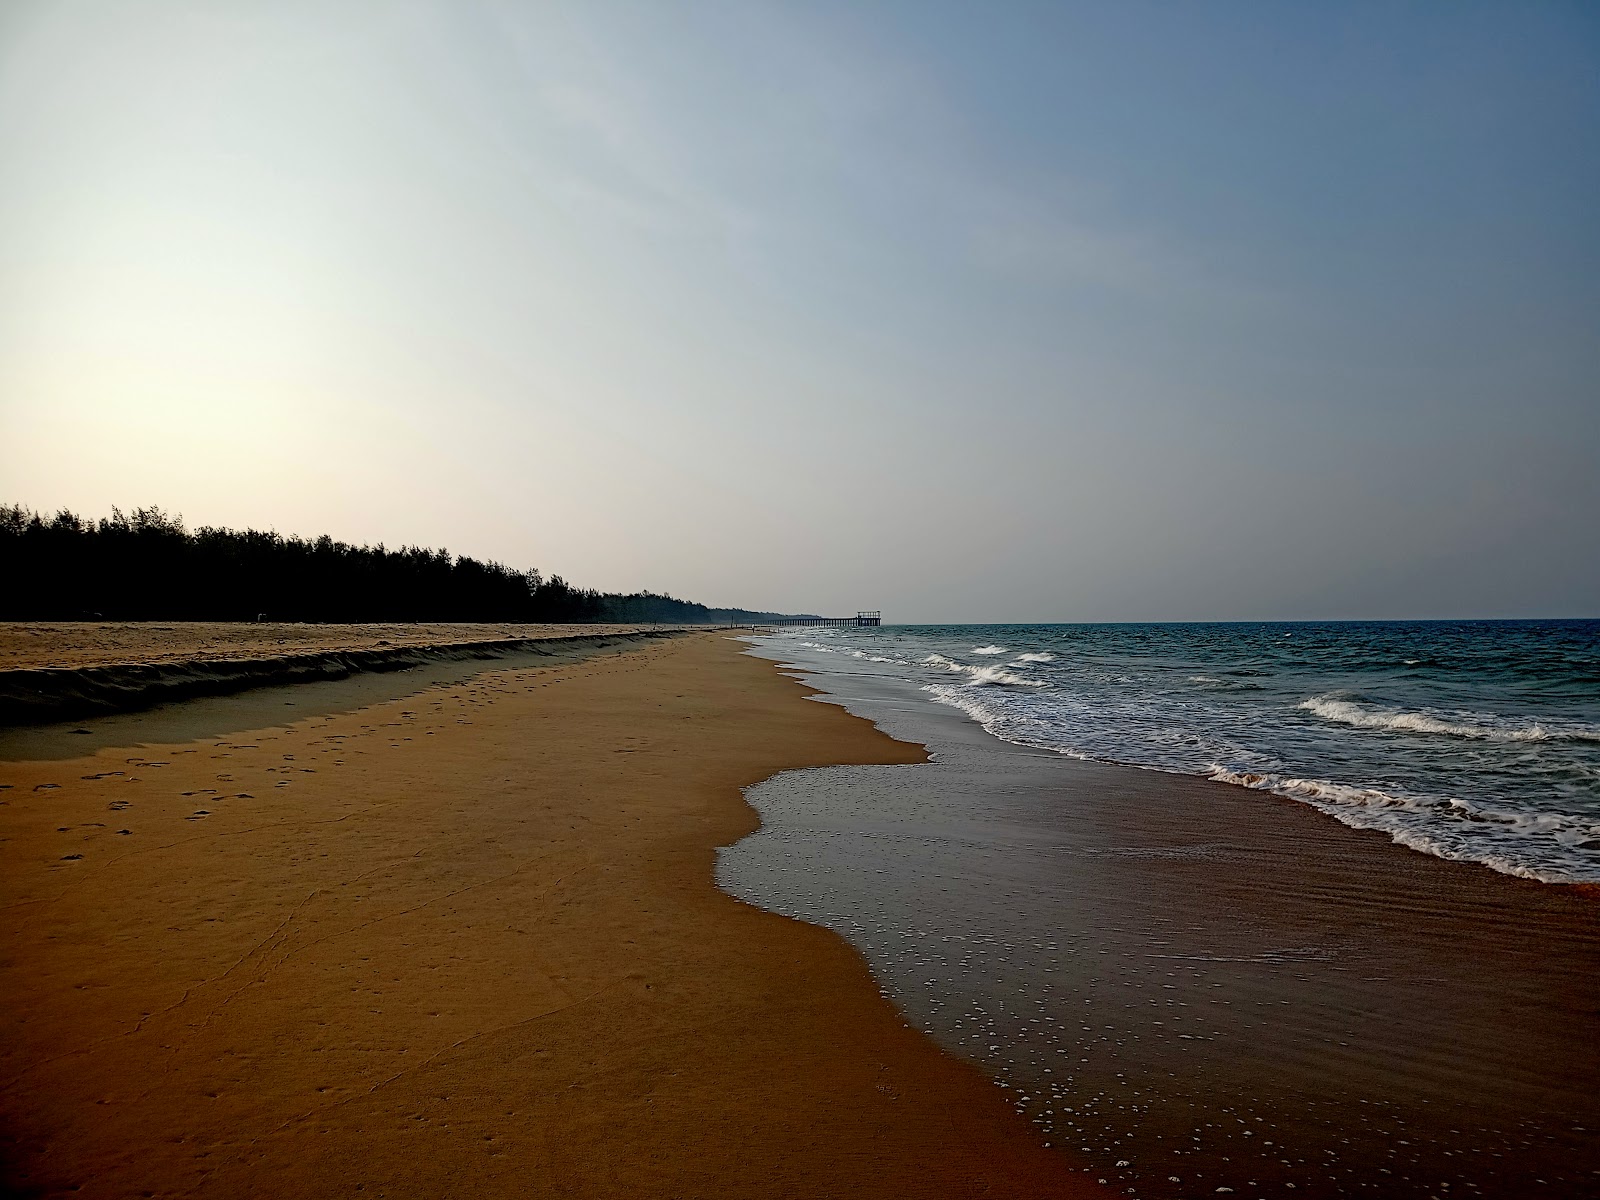 Krishnapatnam Beach'in fotoğrafı parlak kum yüzey ile